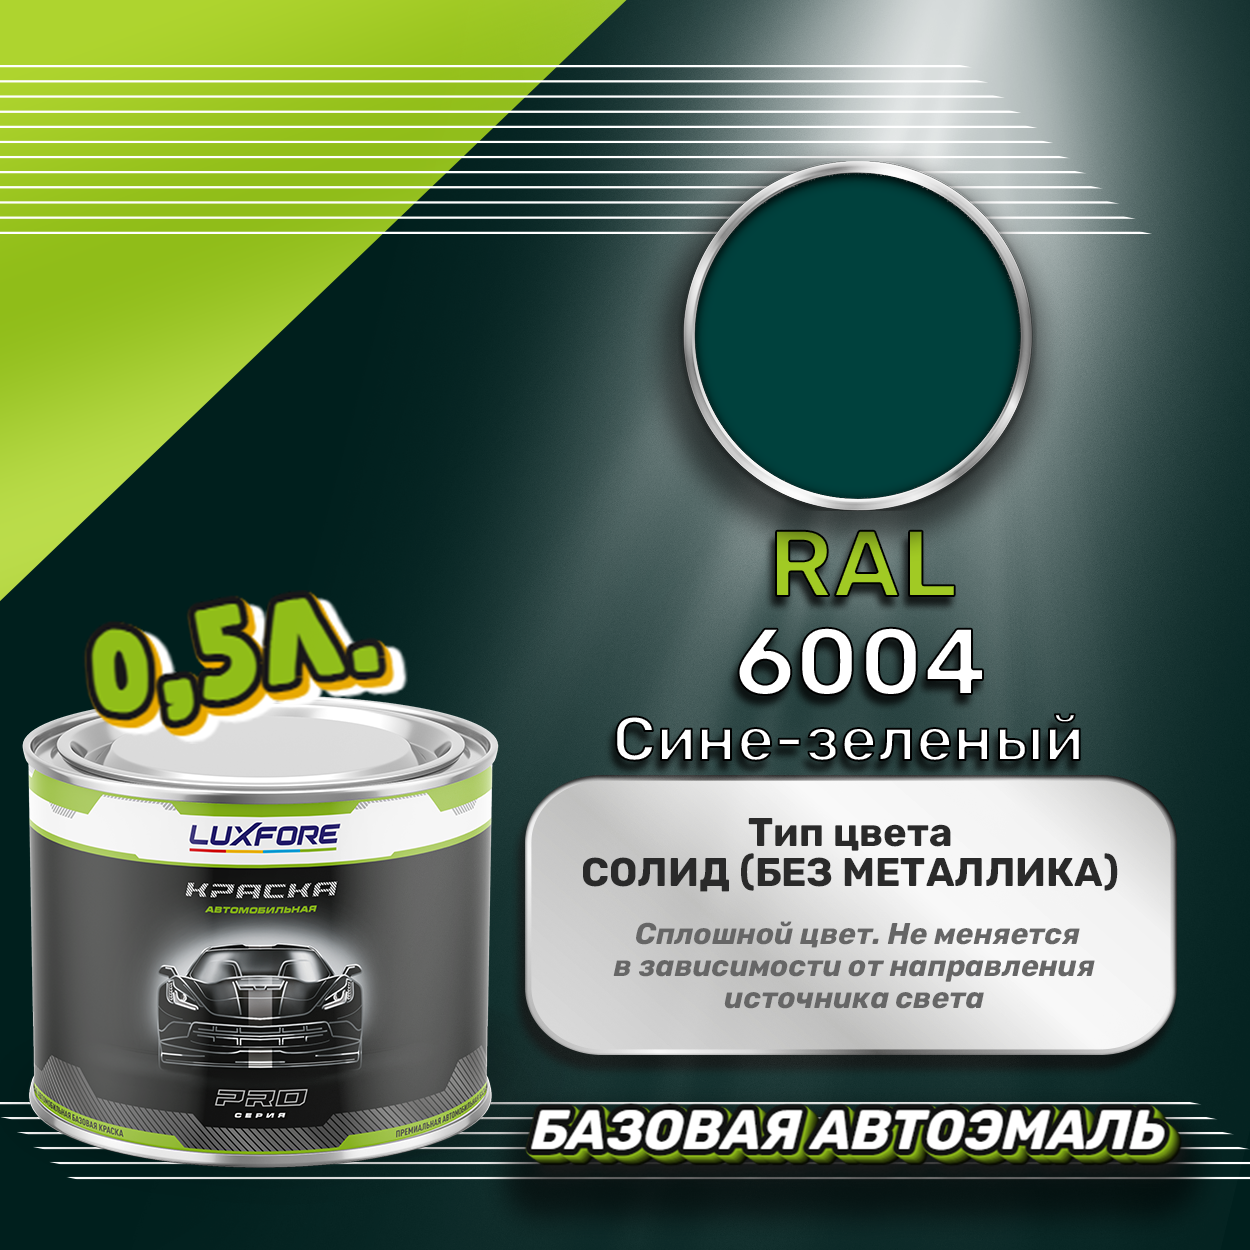 Luxfore краска базовая эмаль RAL 6004 Сине-зеленый 500 мл